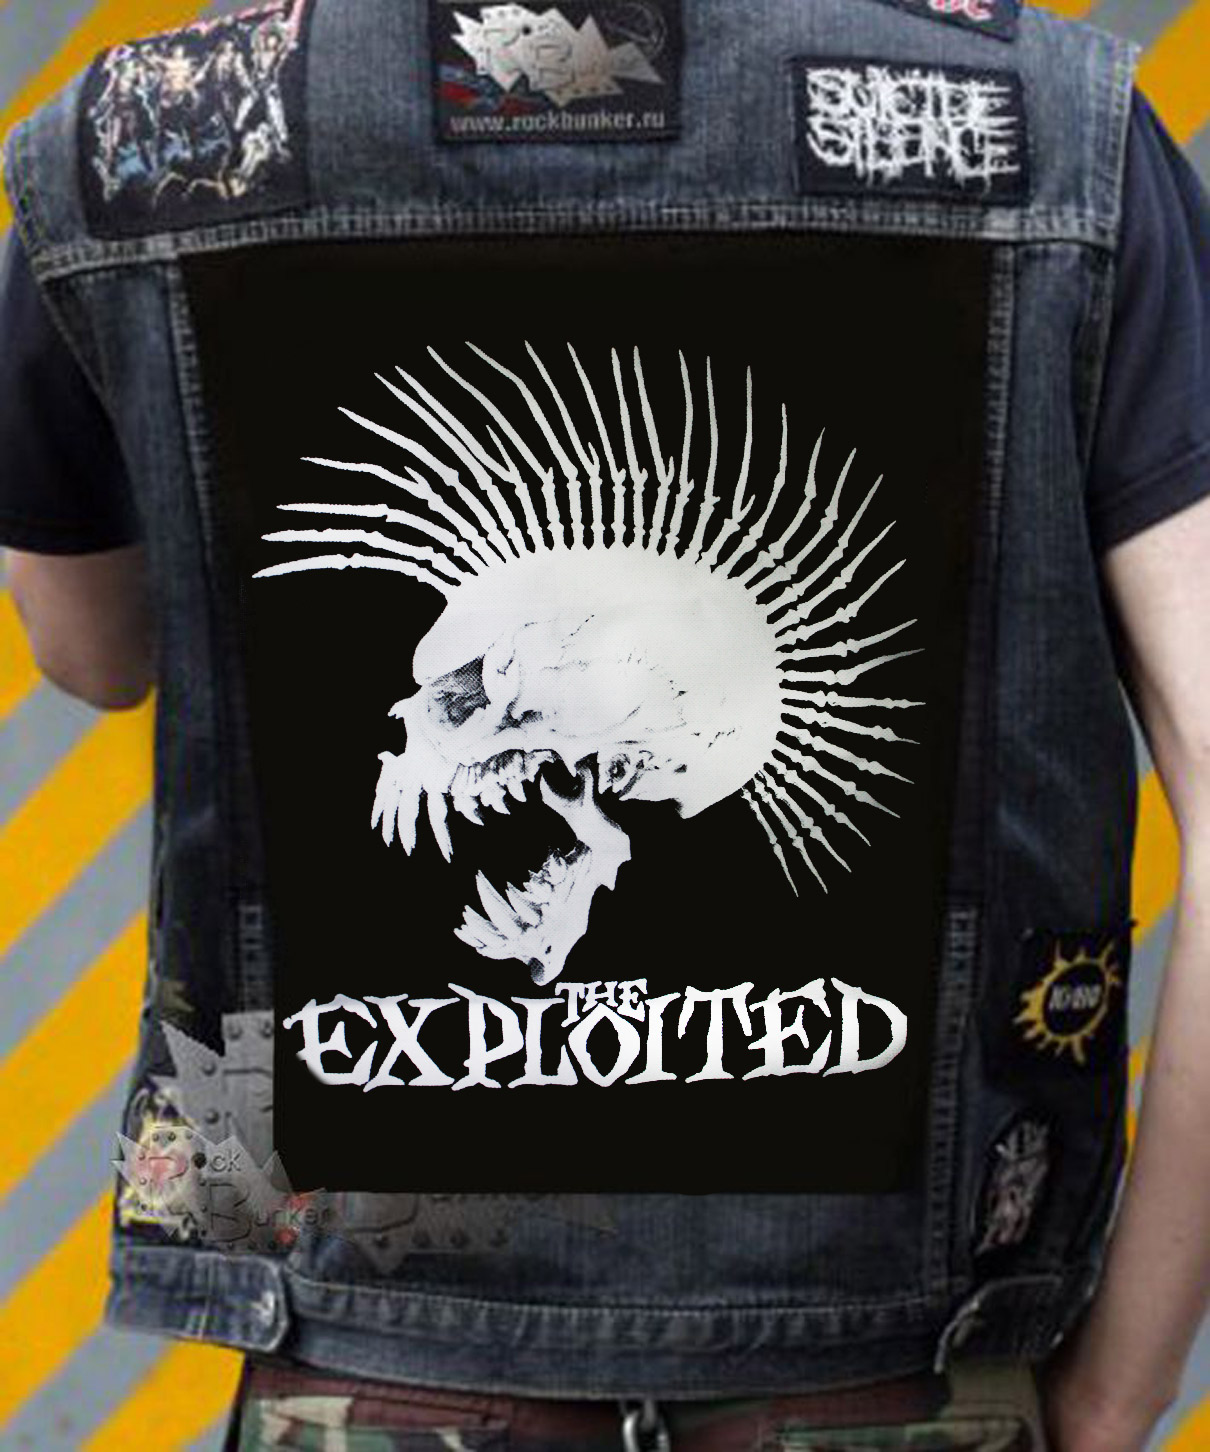 Нашивка The Exploited - фото 1 - rockbunker.ru